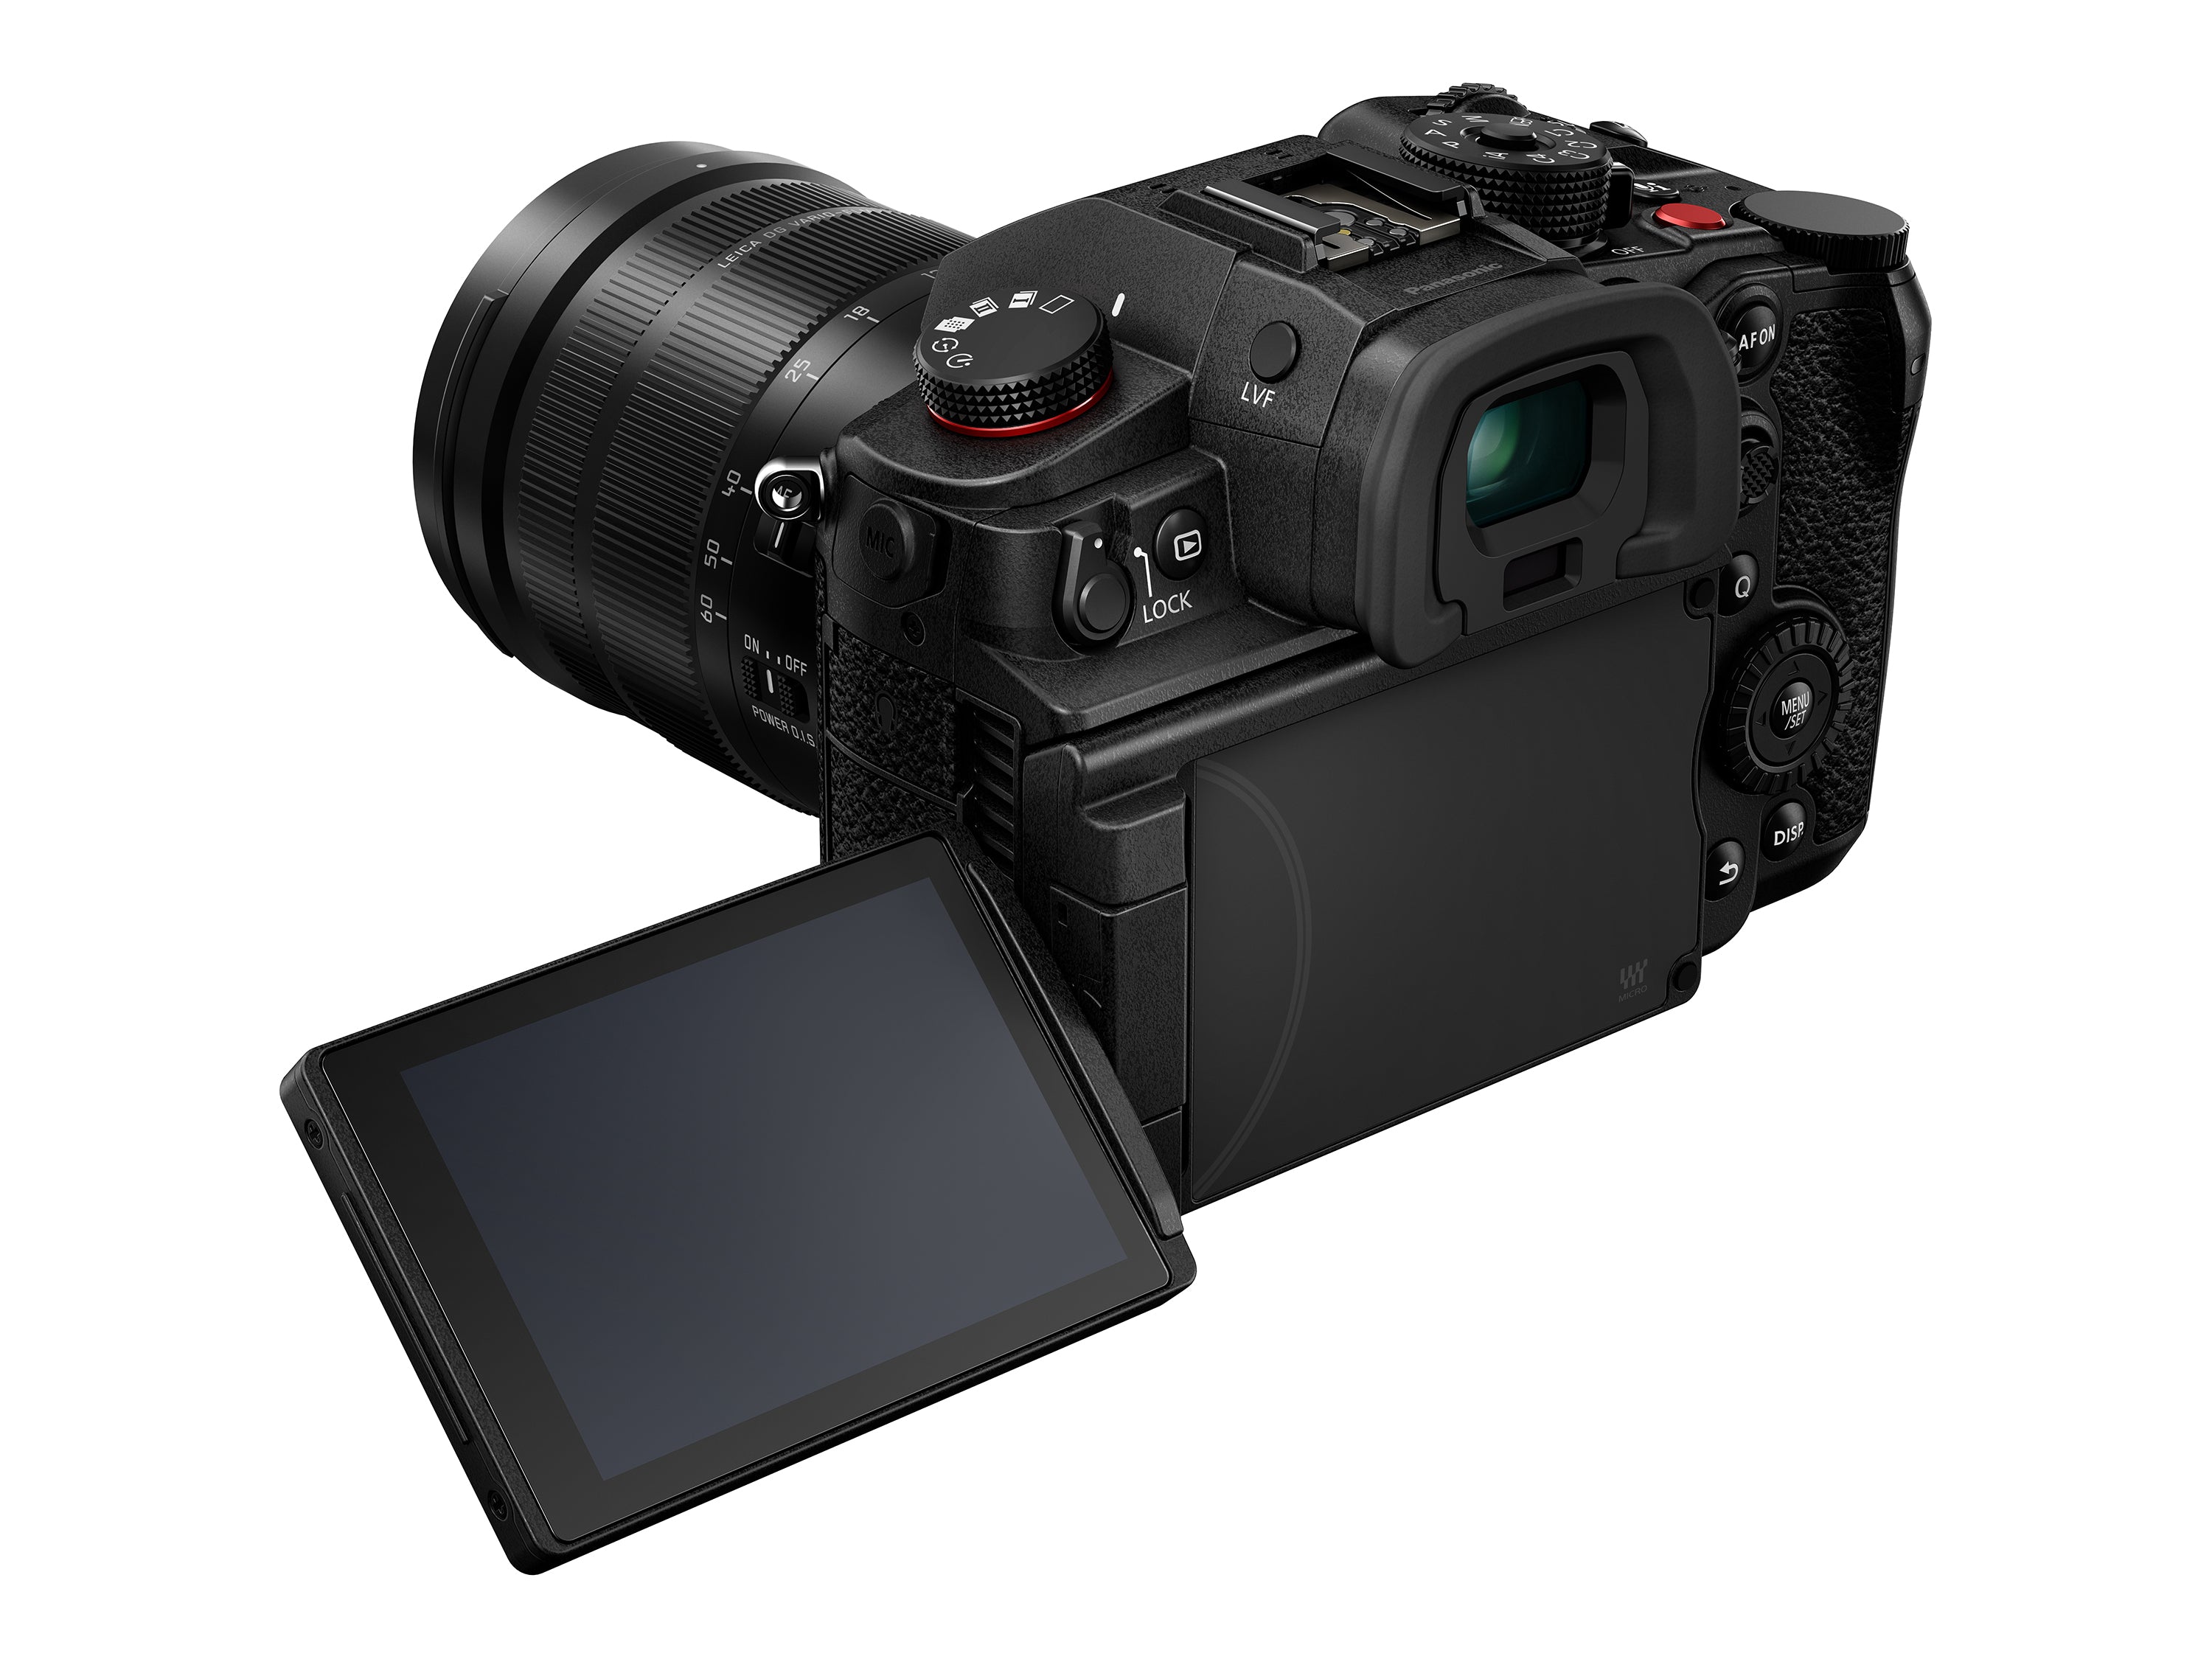 GH7 Mirrorless Camera + 12-60mm F2.8-4.0 Lens